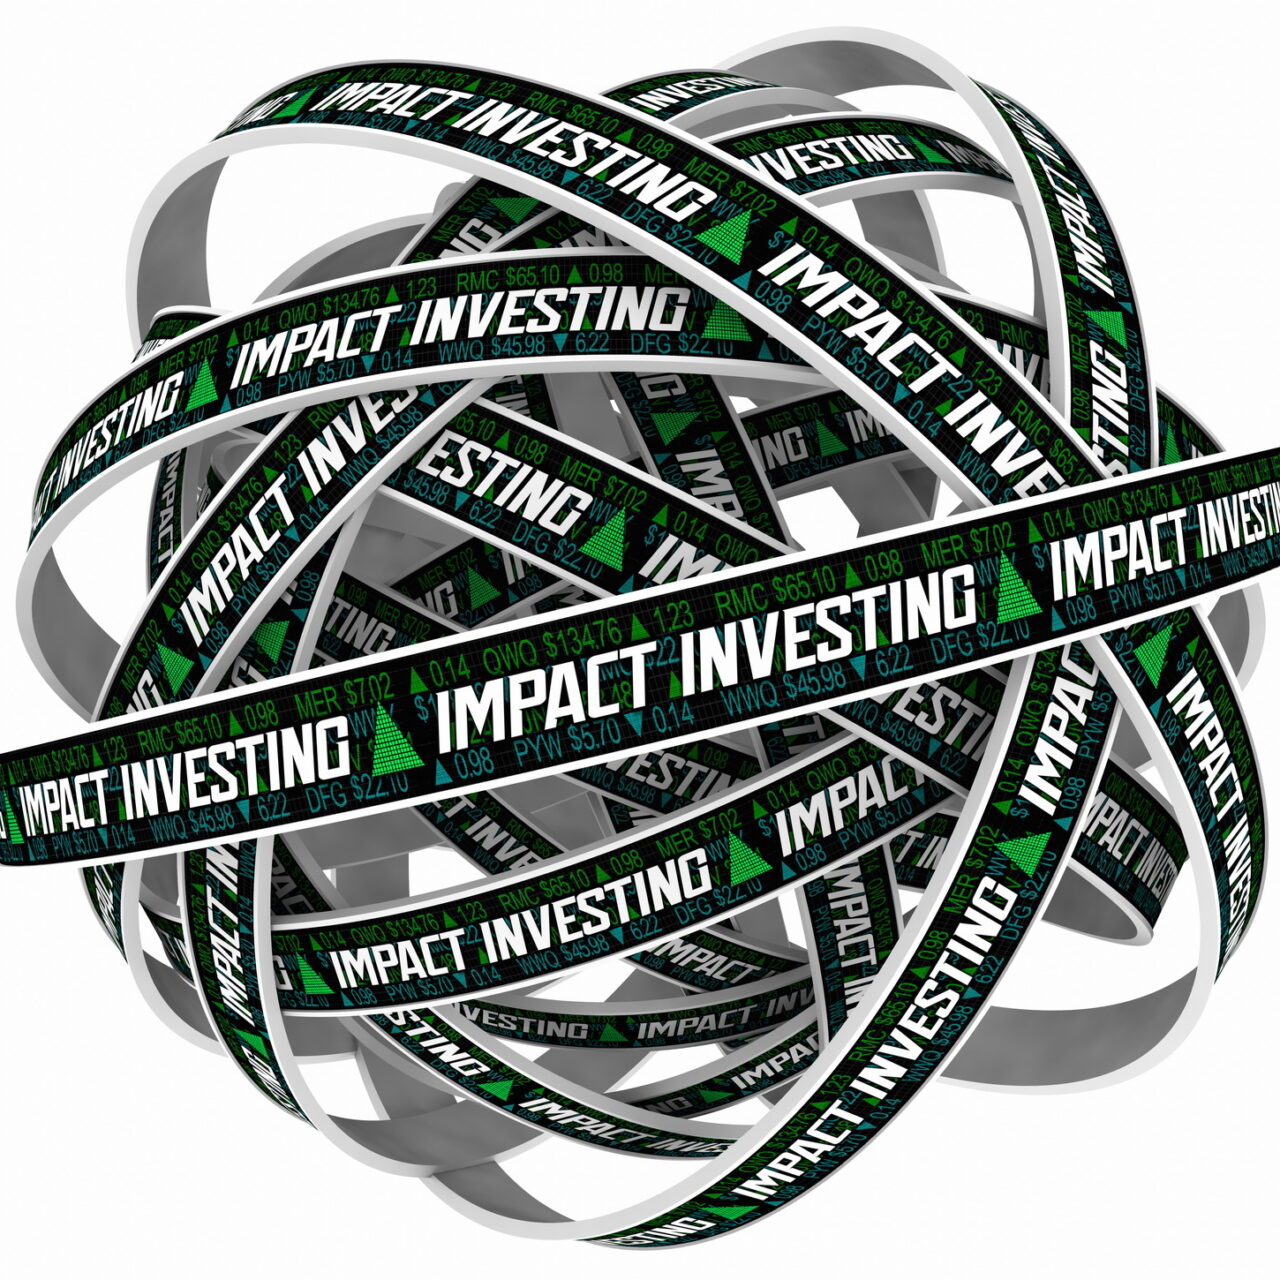 DVFA veröffentlicht Leitfaden zu Impact Investing